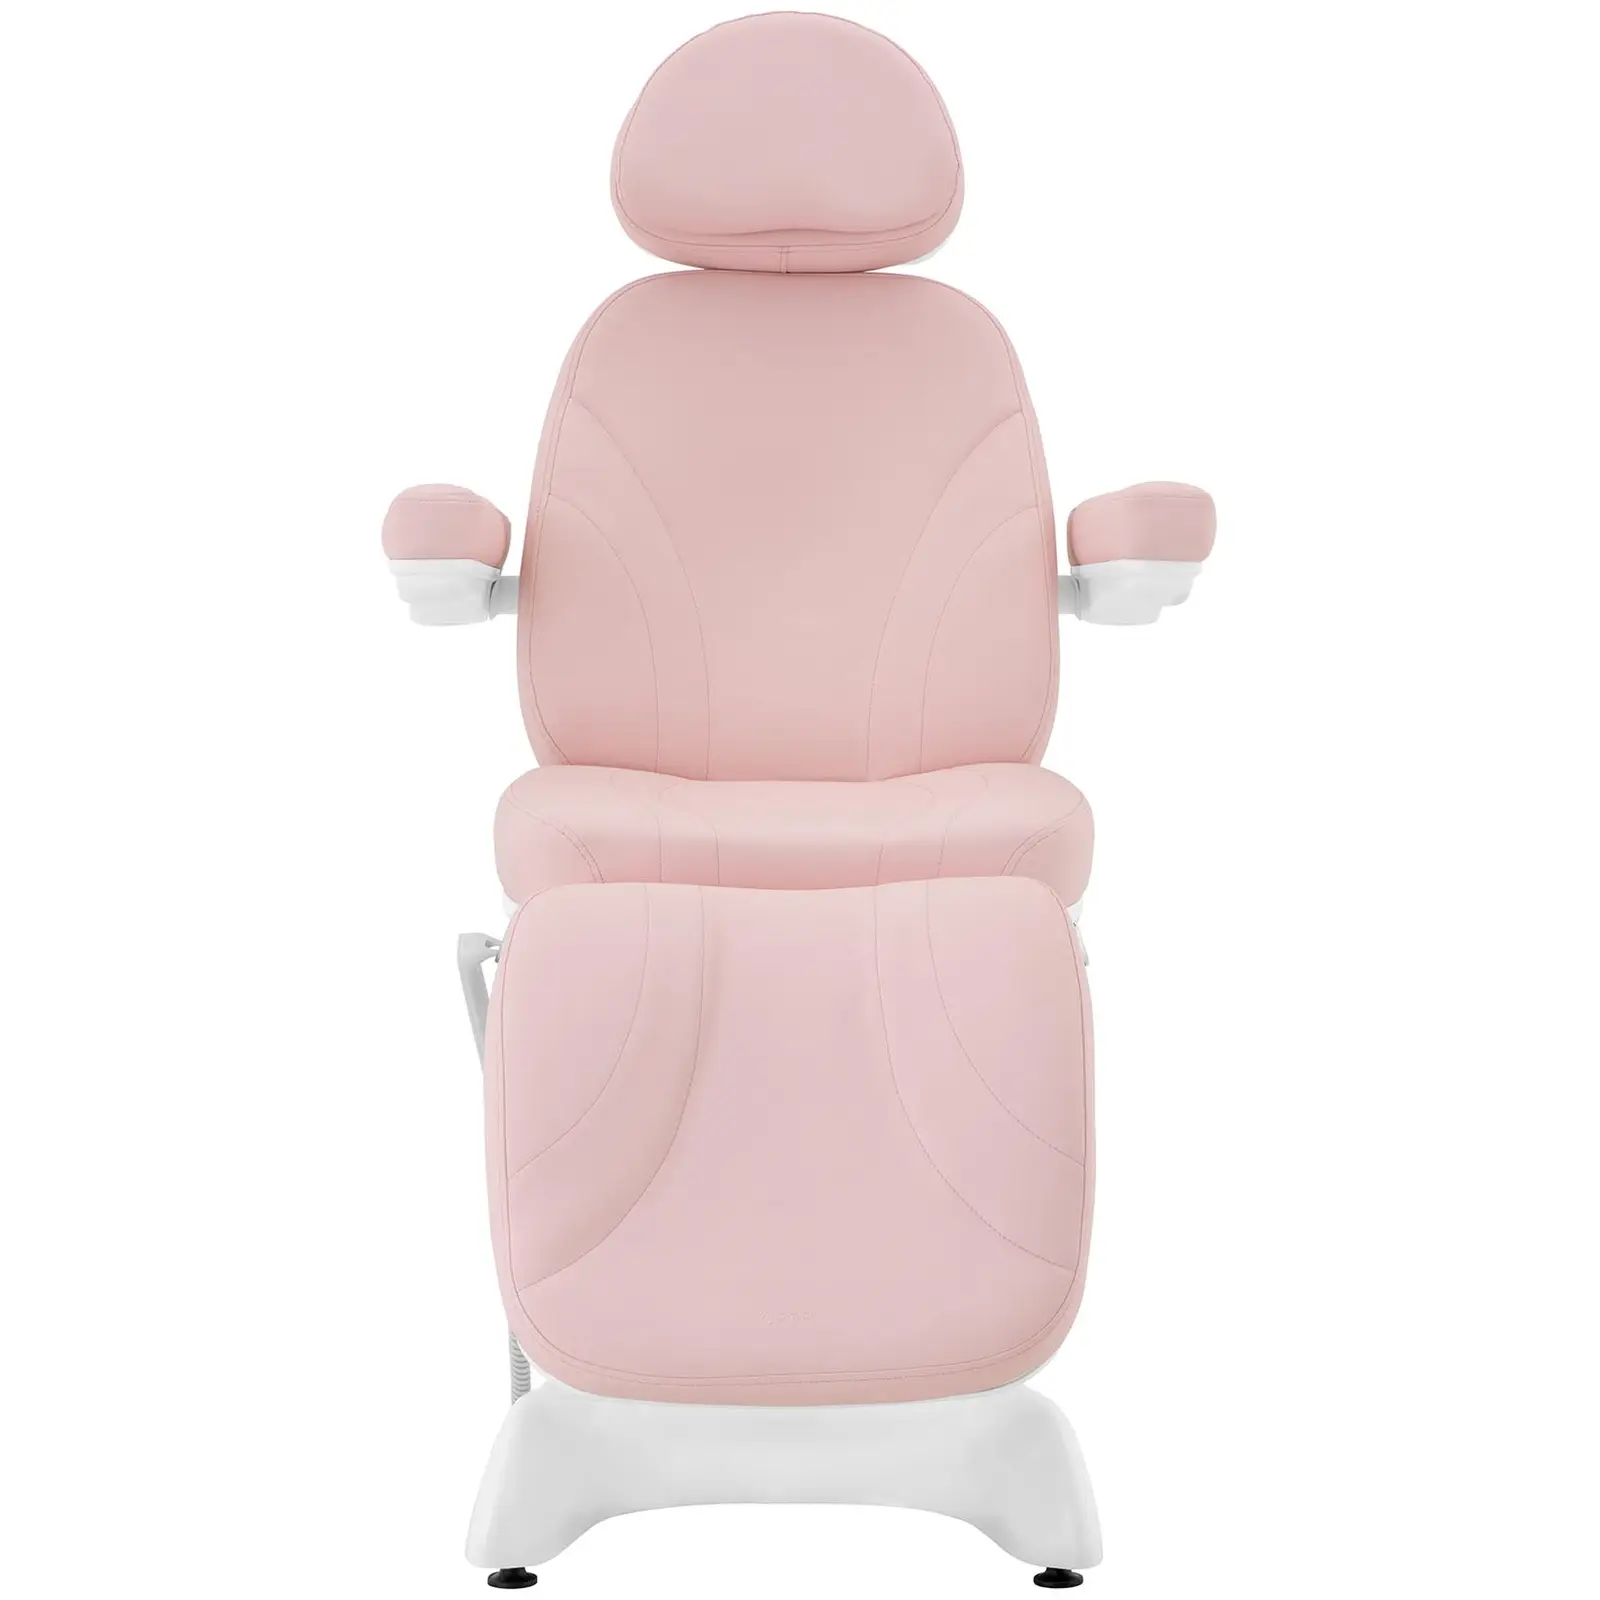 Fotel kosmetyczny - 200 W - 150 kg - Różowy, Biały